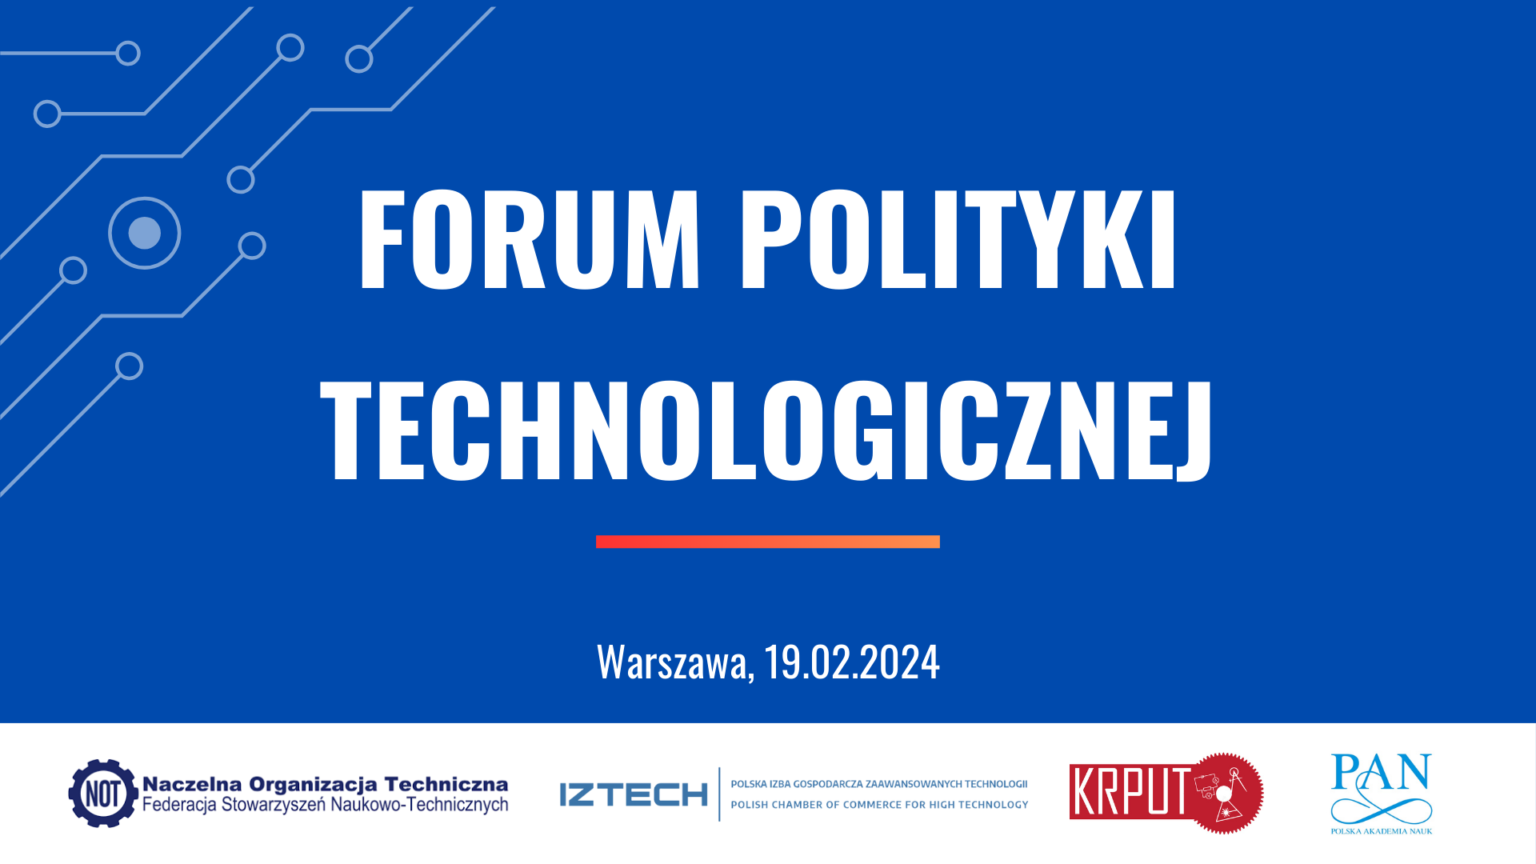 Forum Polityki Technologicznej